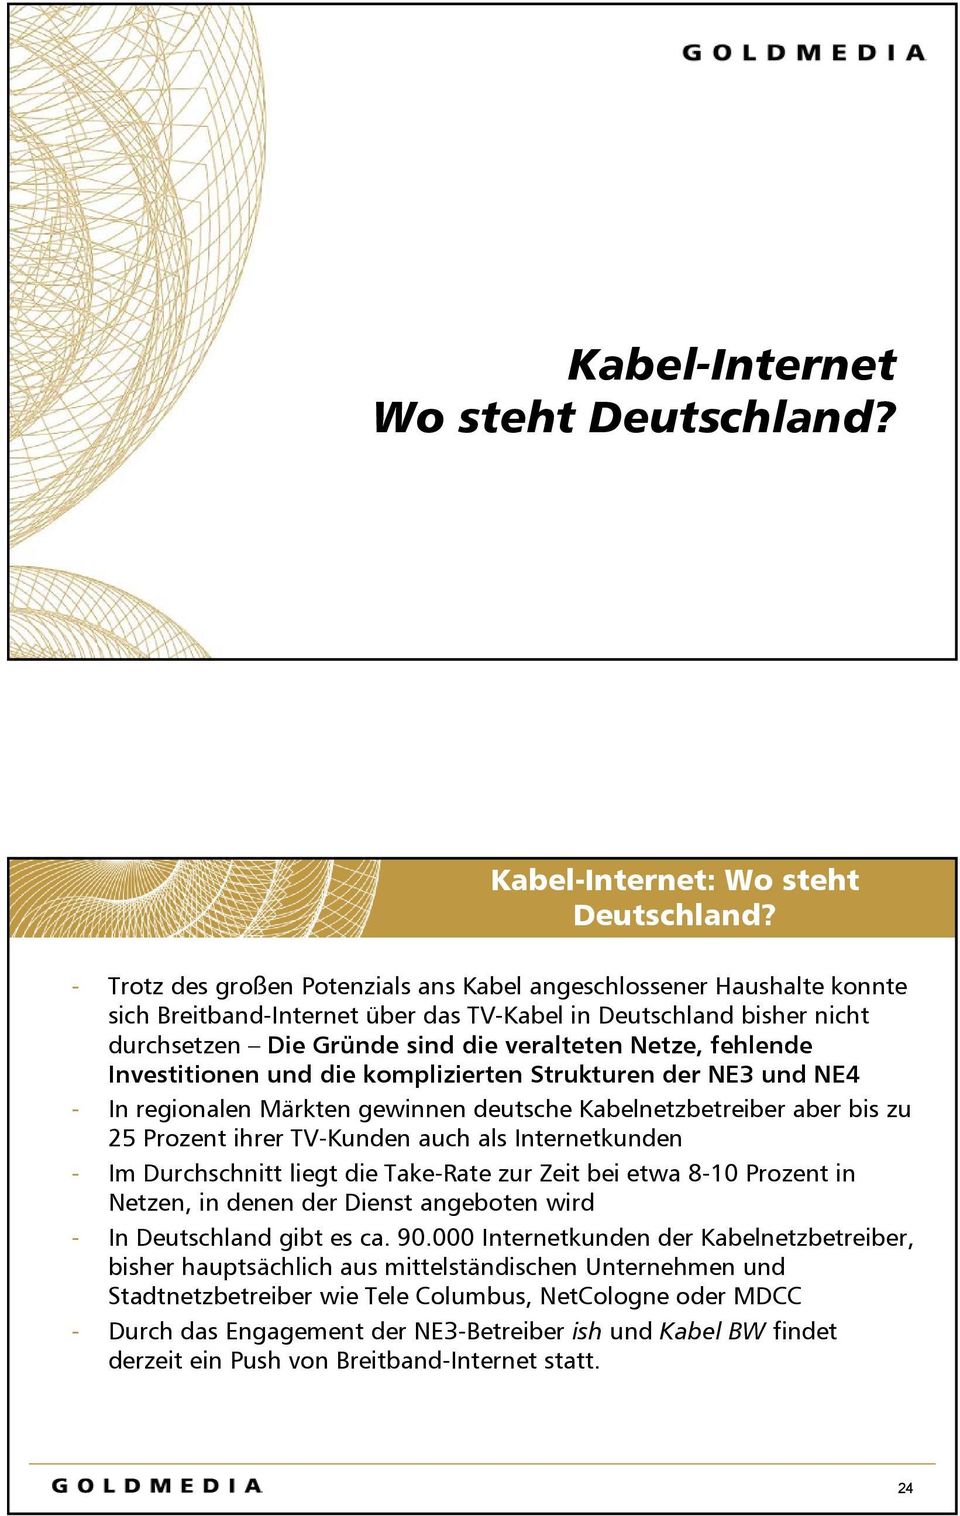 Investitionen und die komplizierten Strukturen der NE3 und NE4 - In regionalen Märkten gewinnen deutsche Kabelnetzbetreiber aber bis zu 25 Prozent ihrer TV-Kunden auch als Internetkunden - Im